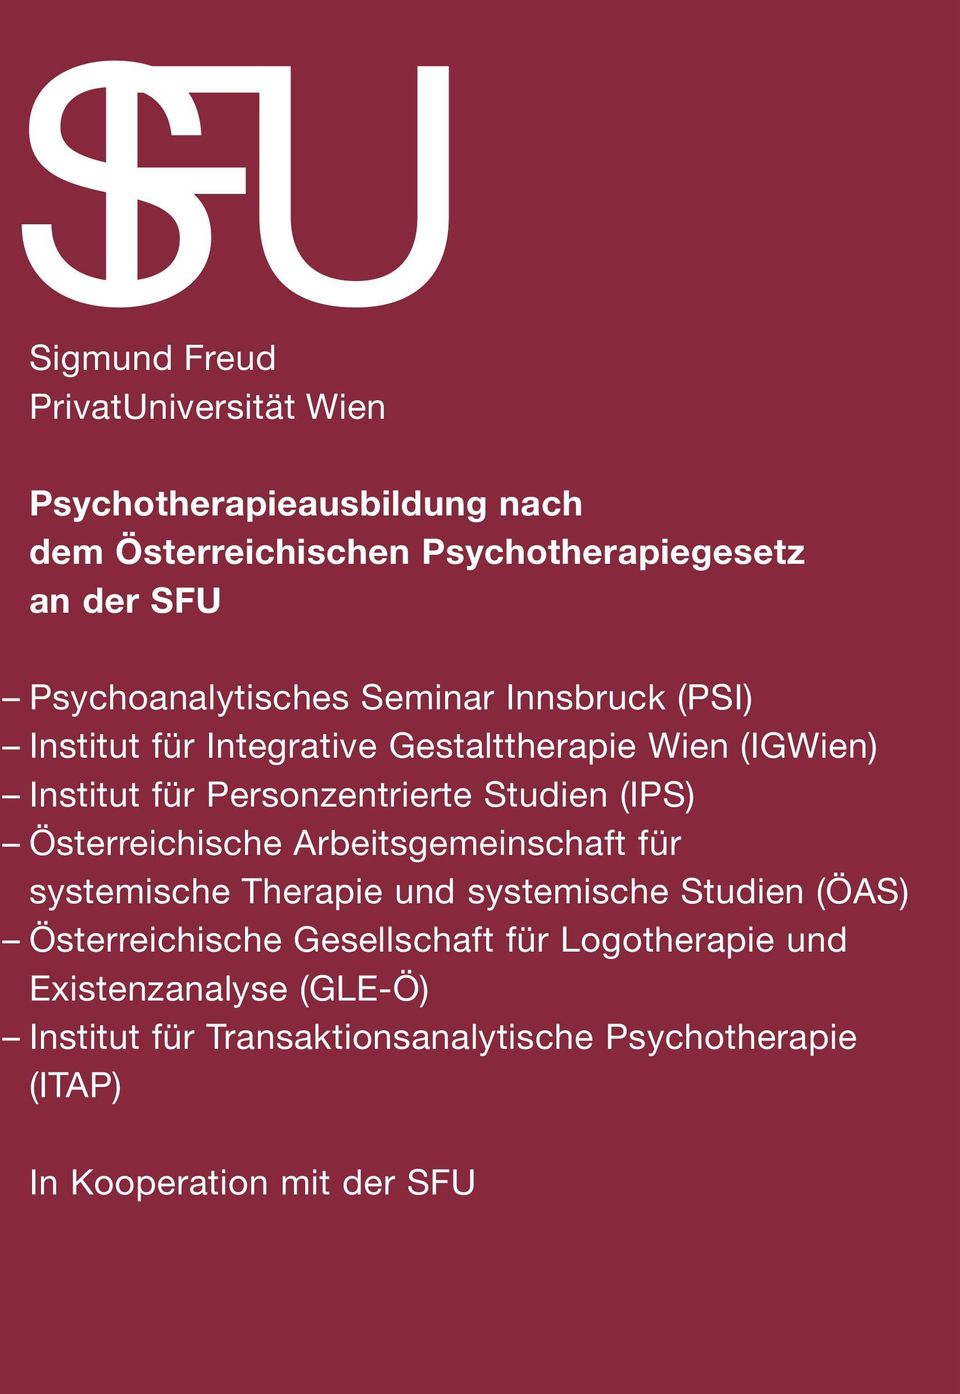 Studien (IPS) Österreichische Arbeitsgemeinschaft für systemische Therapie und systemische Studien (ÖAS) Österreichische